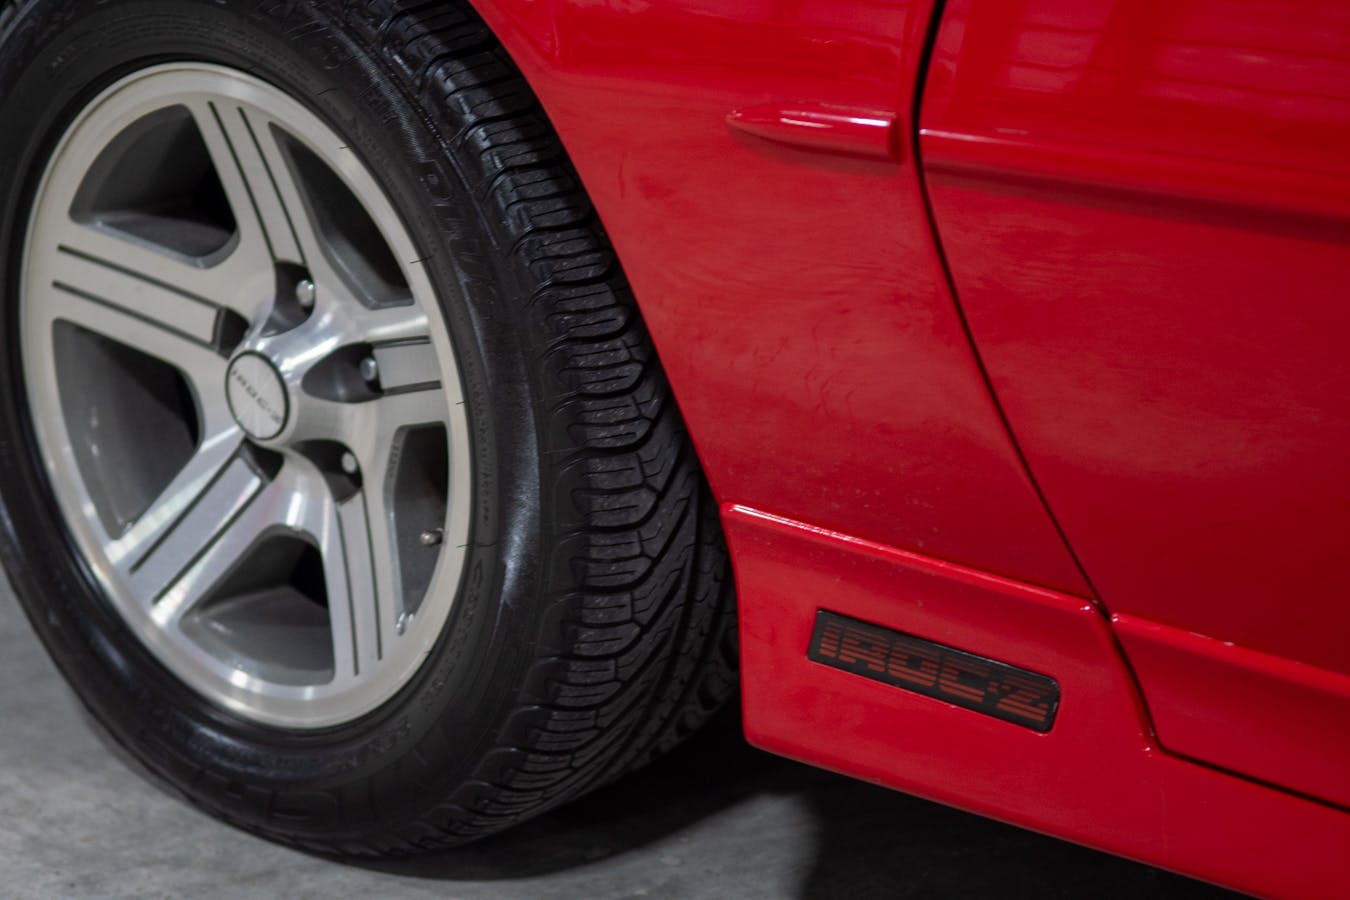 Chevrolet IROC-Z Camaro wheel tire badge